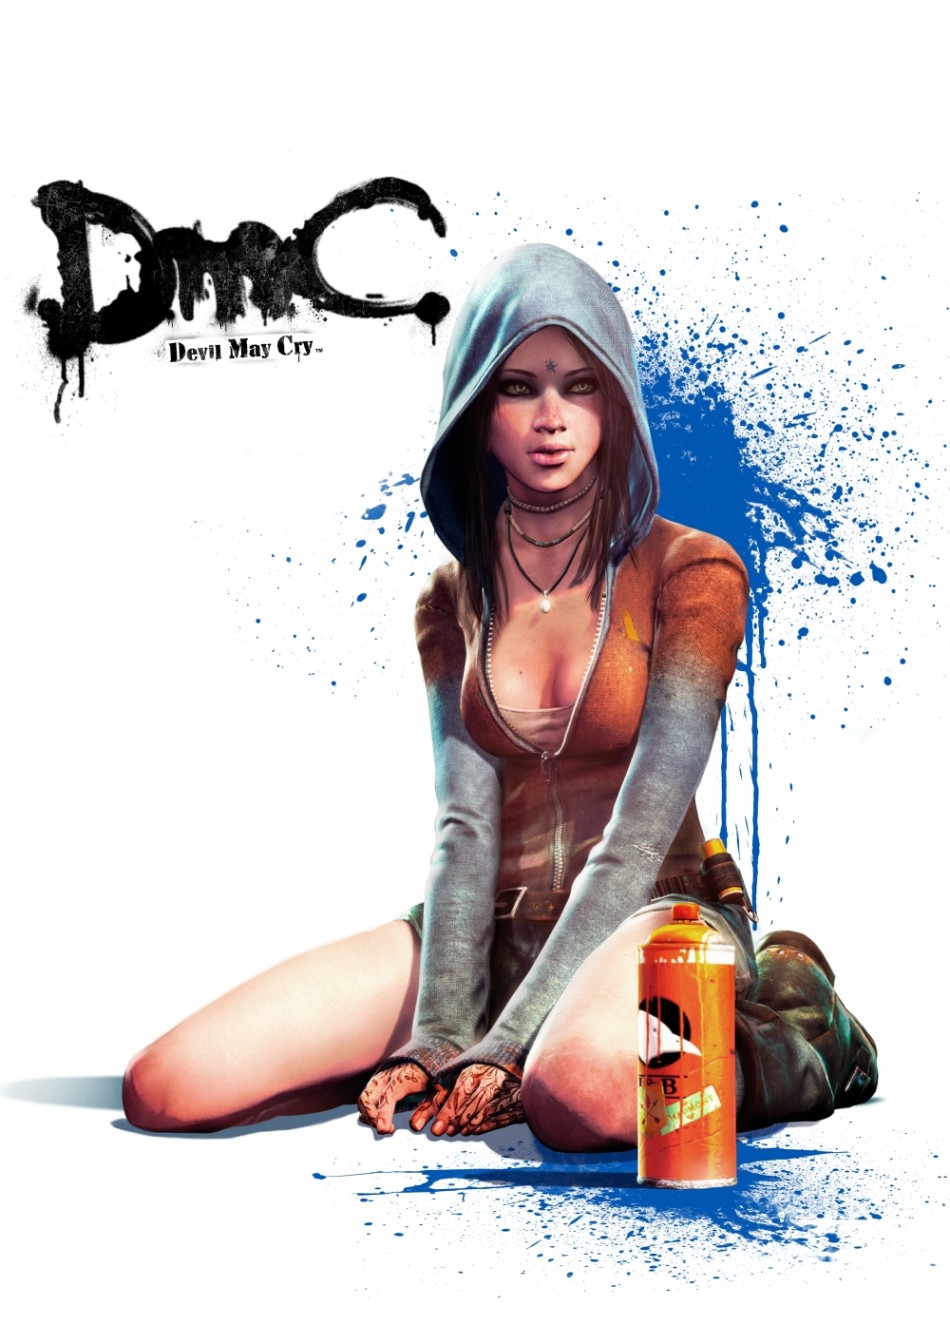 DmC Devil May Cry reboot New Character Kat